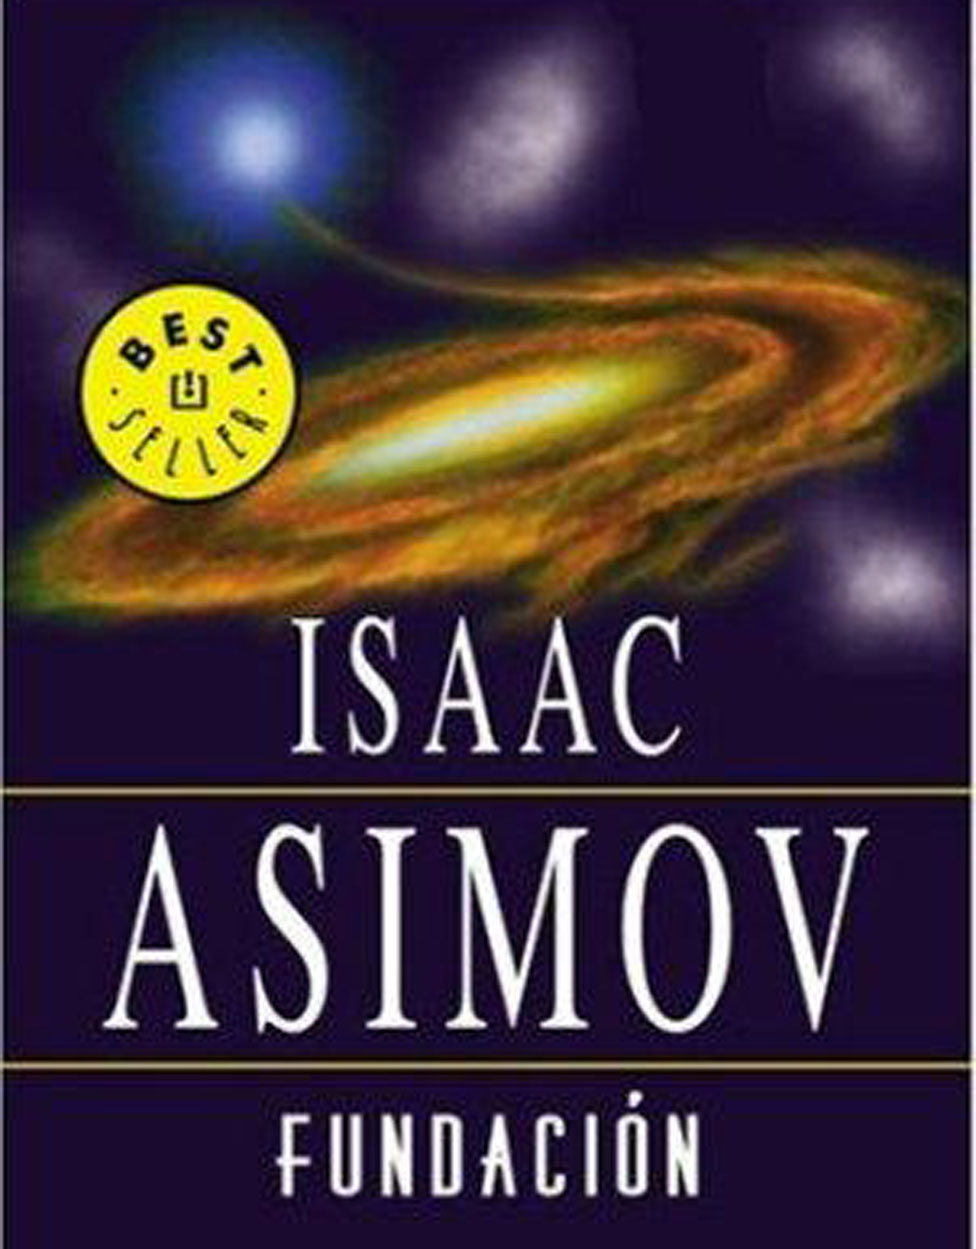 Libro Fundación, de Isaac Asimov (Editorial Debolsillo)